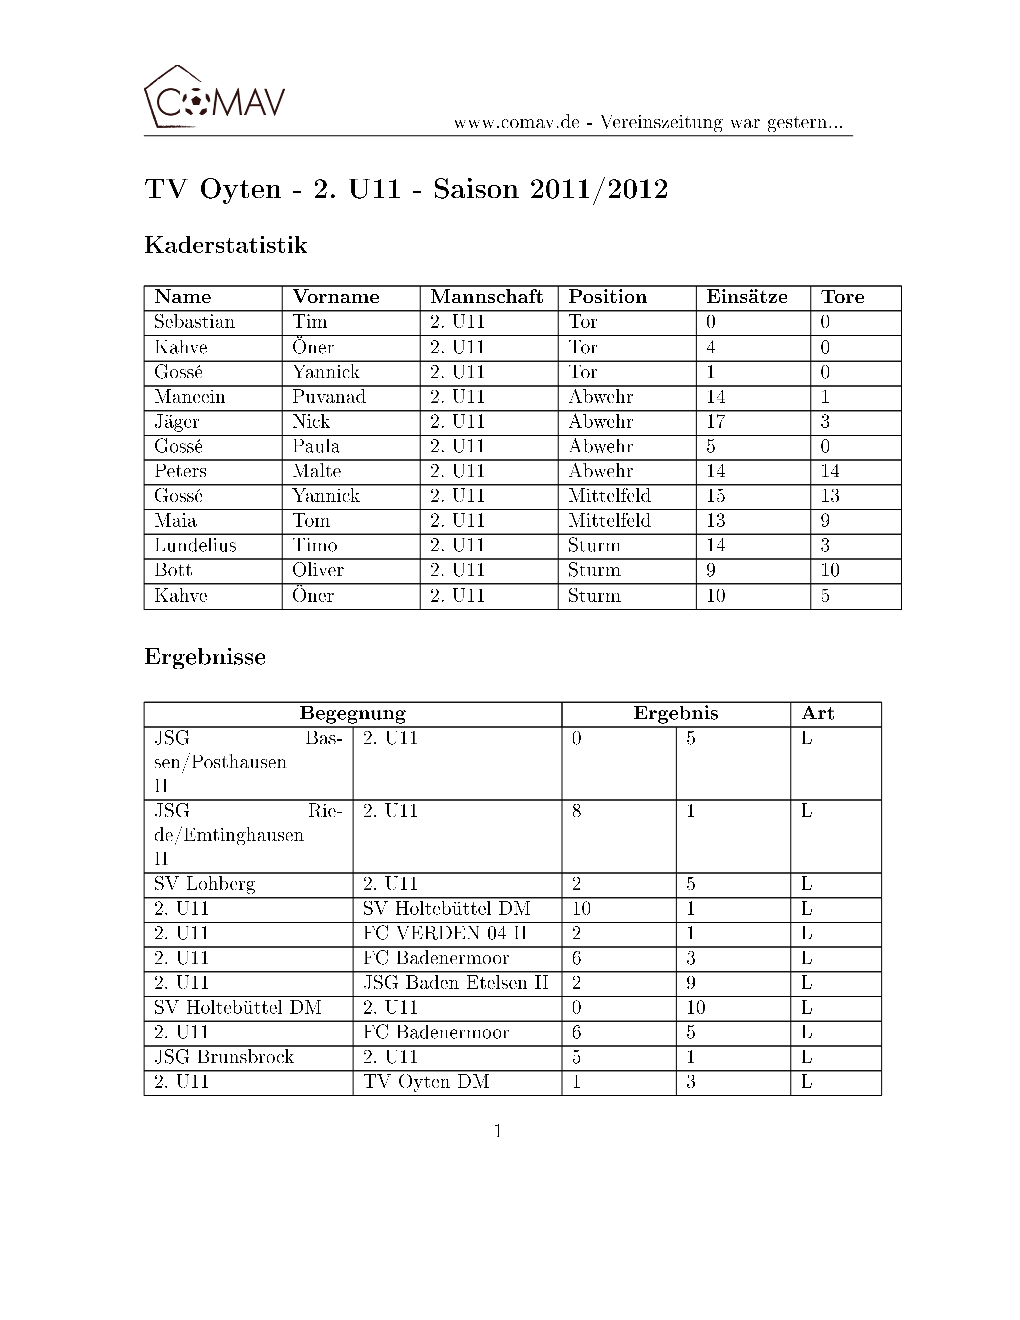 2. U11 - Saison 2011/2012